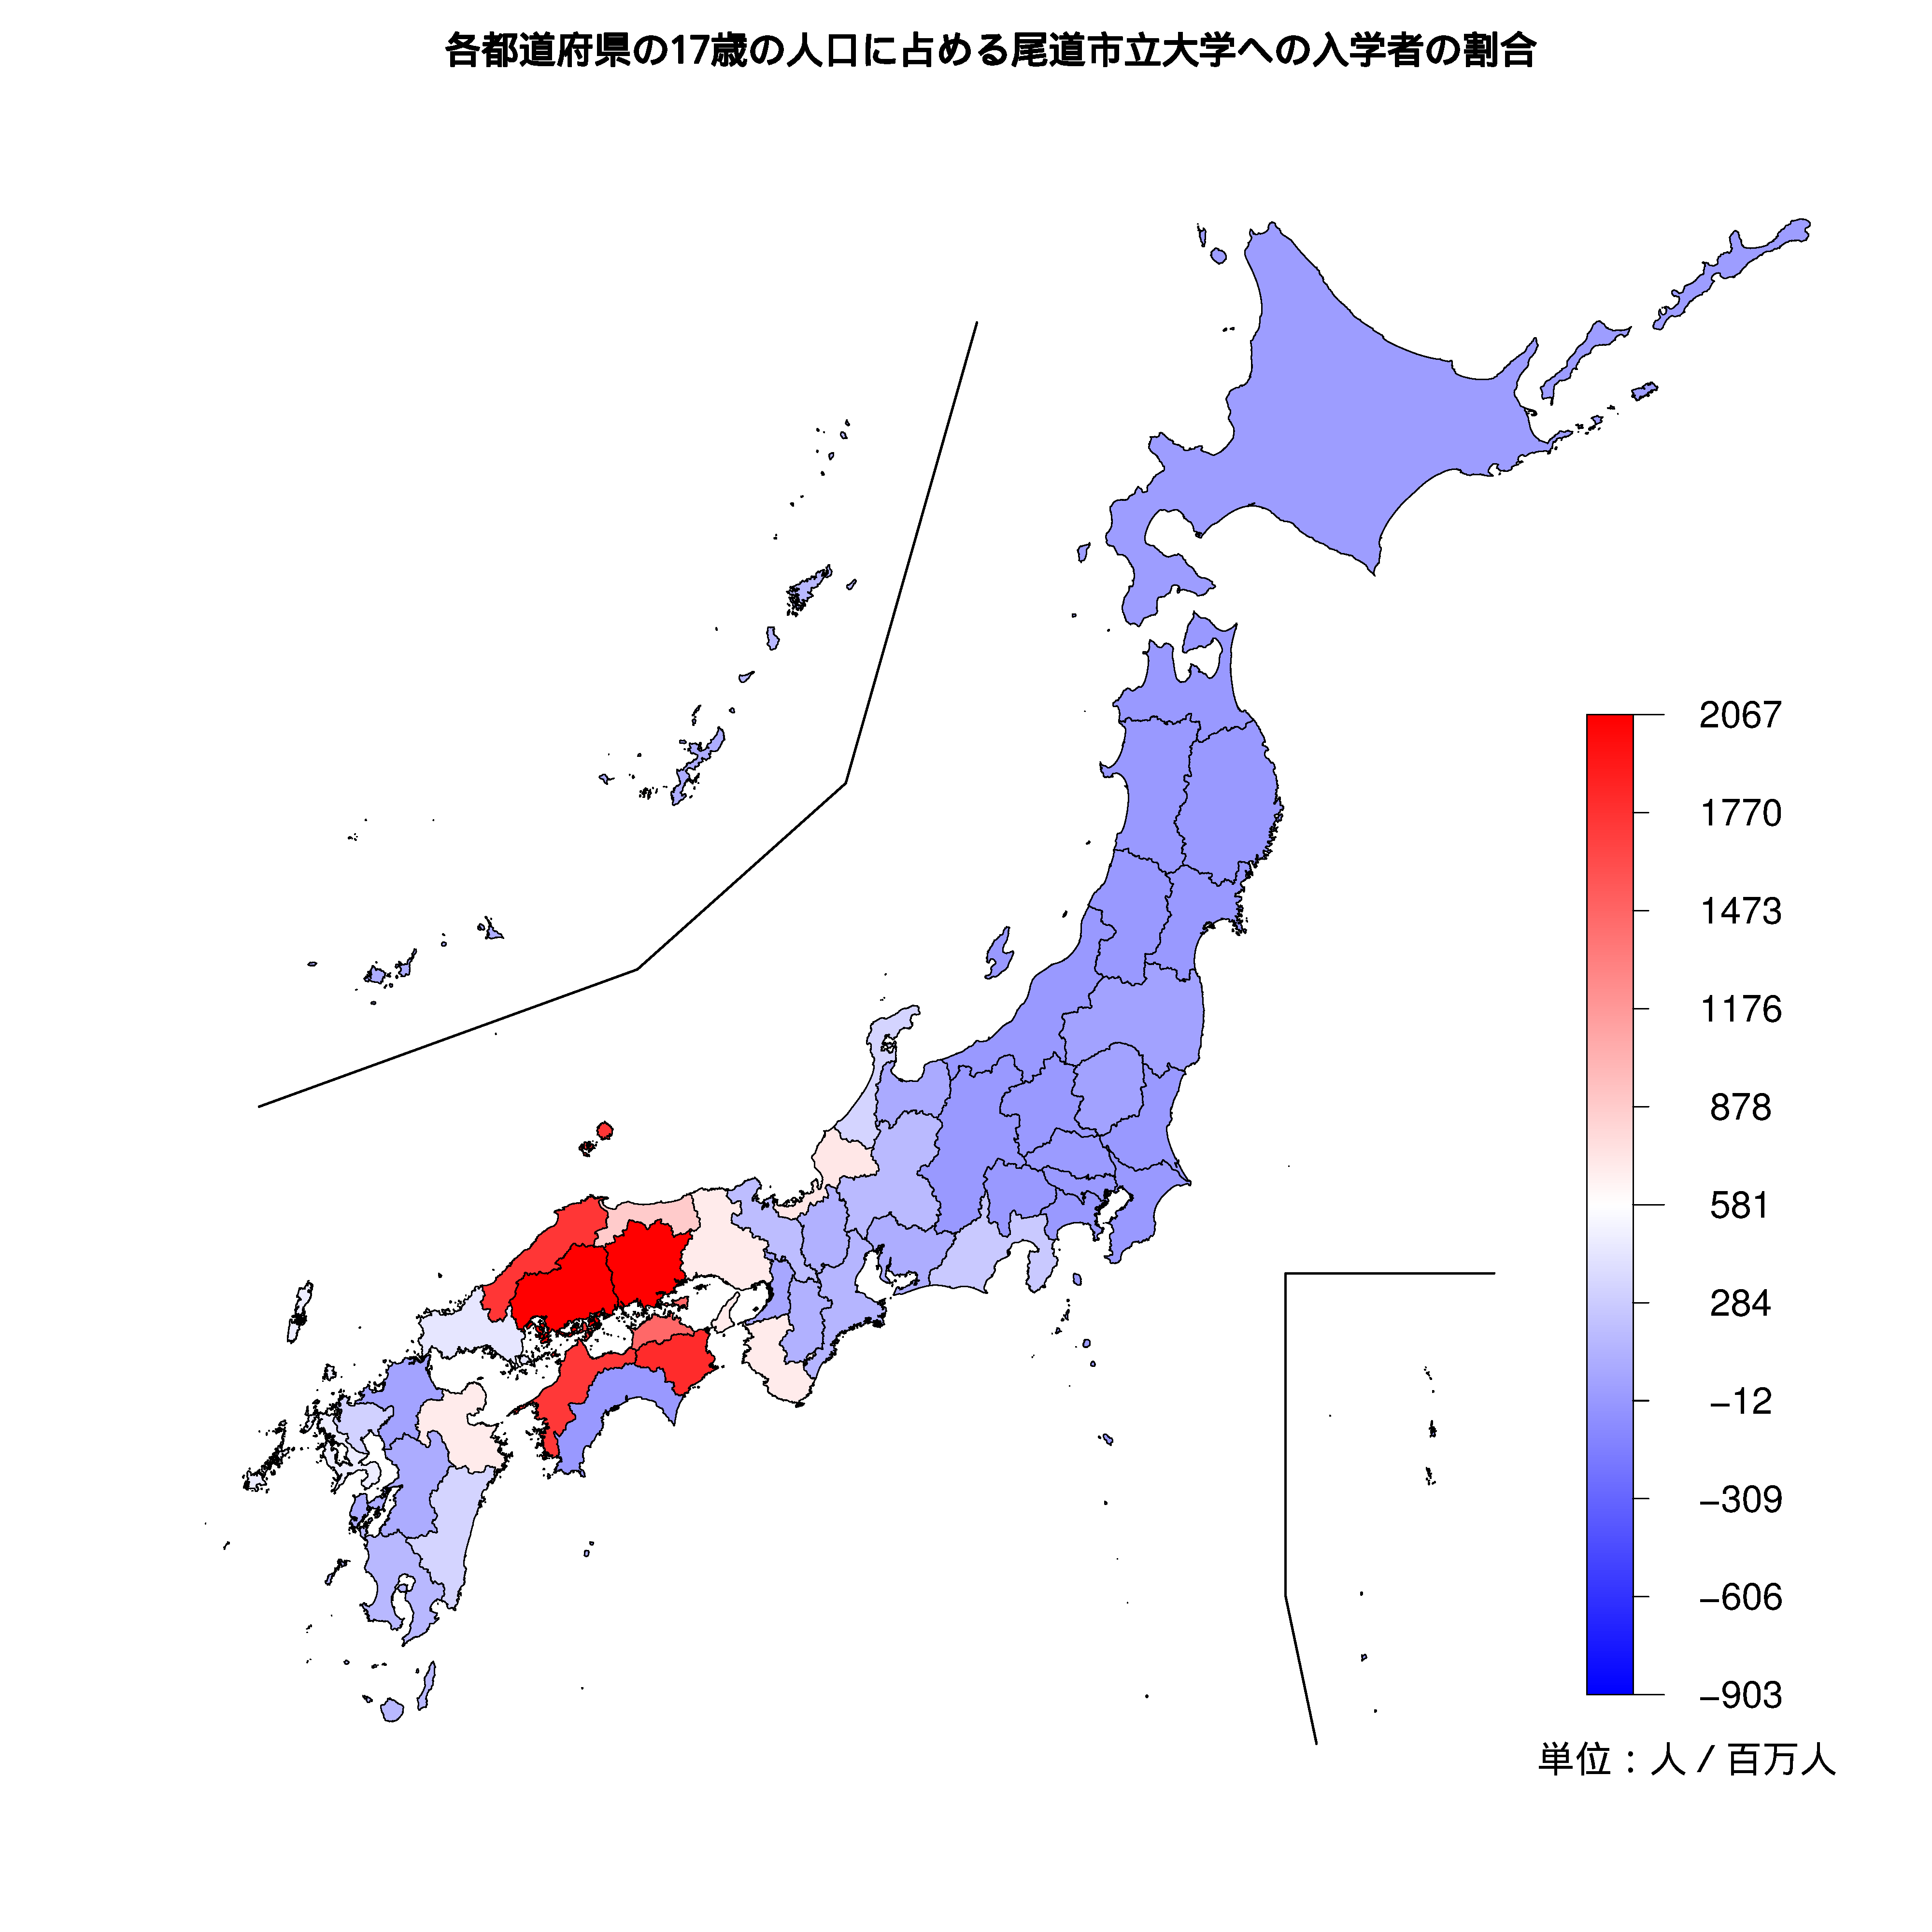 尾道市立大学への入学者が多い都道府県の色分け地図